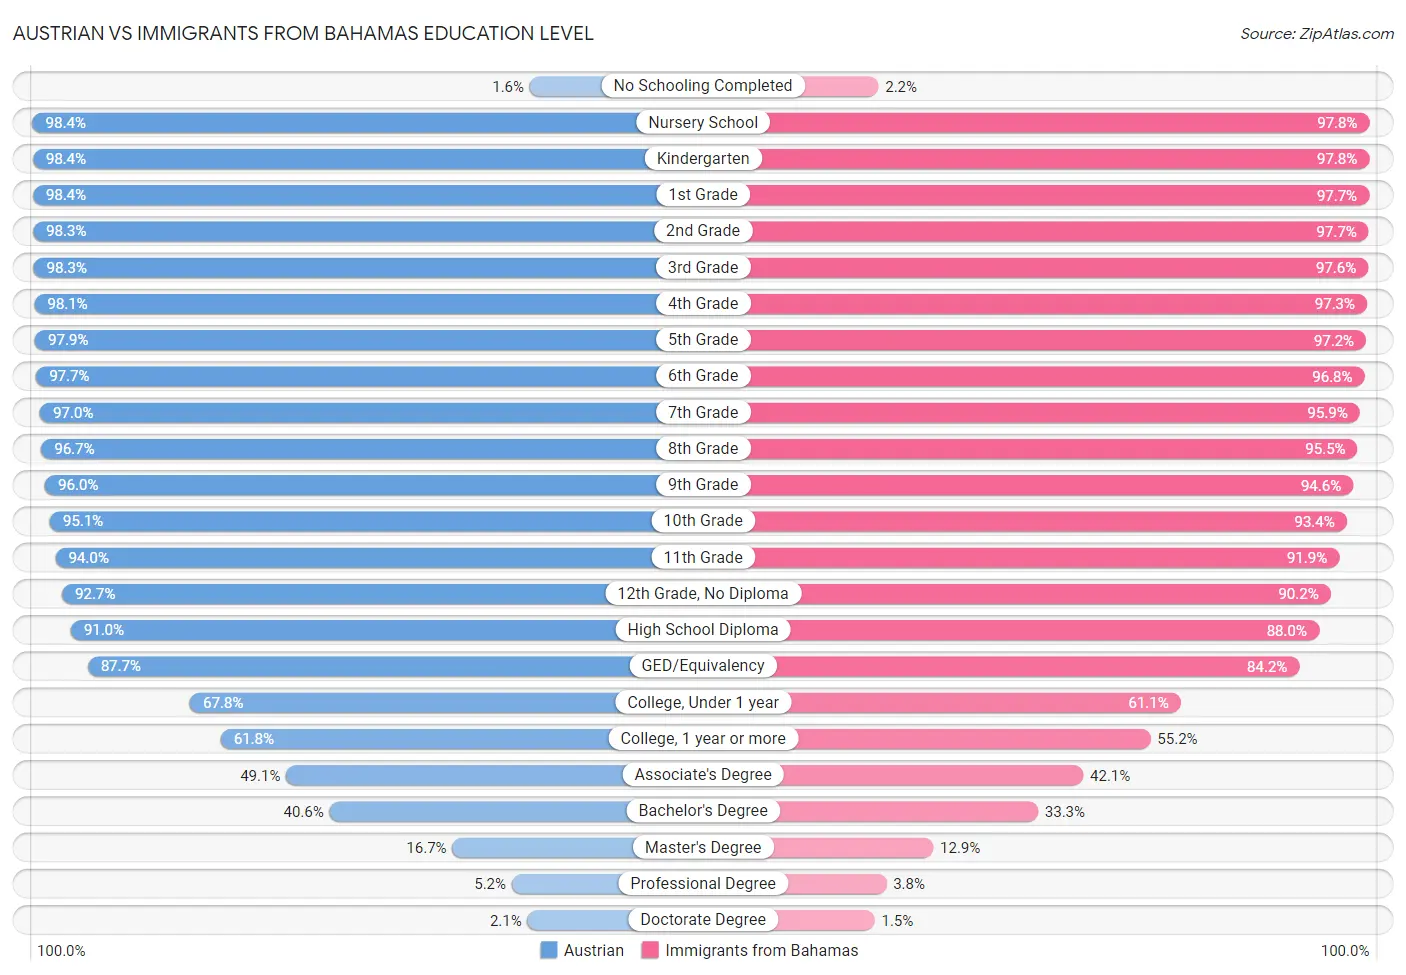 Austrian vs Immigrants from Bahamas Education Level